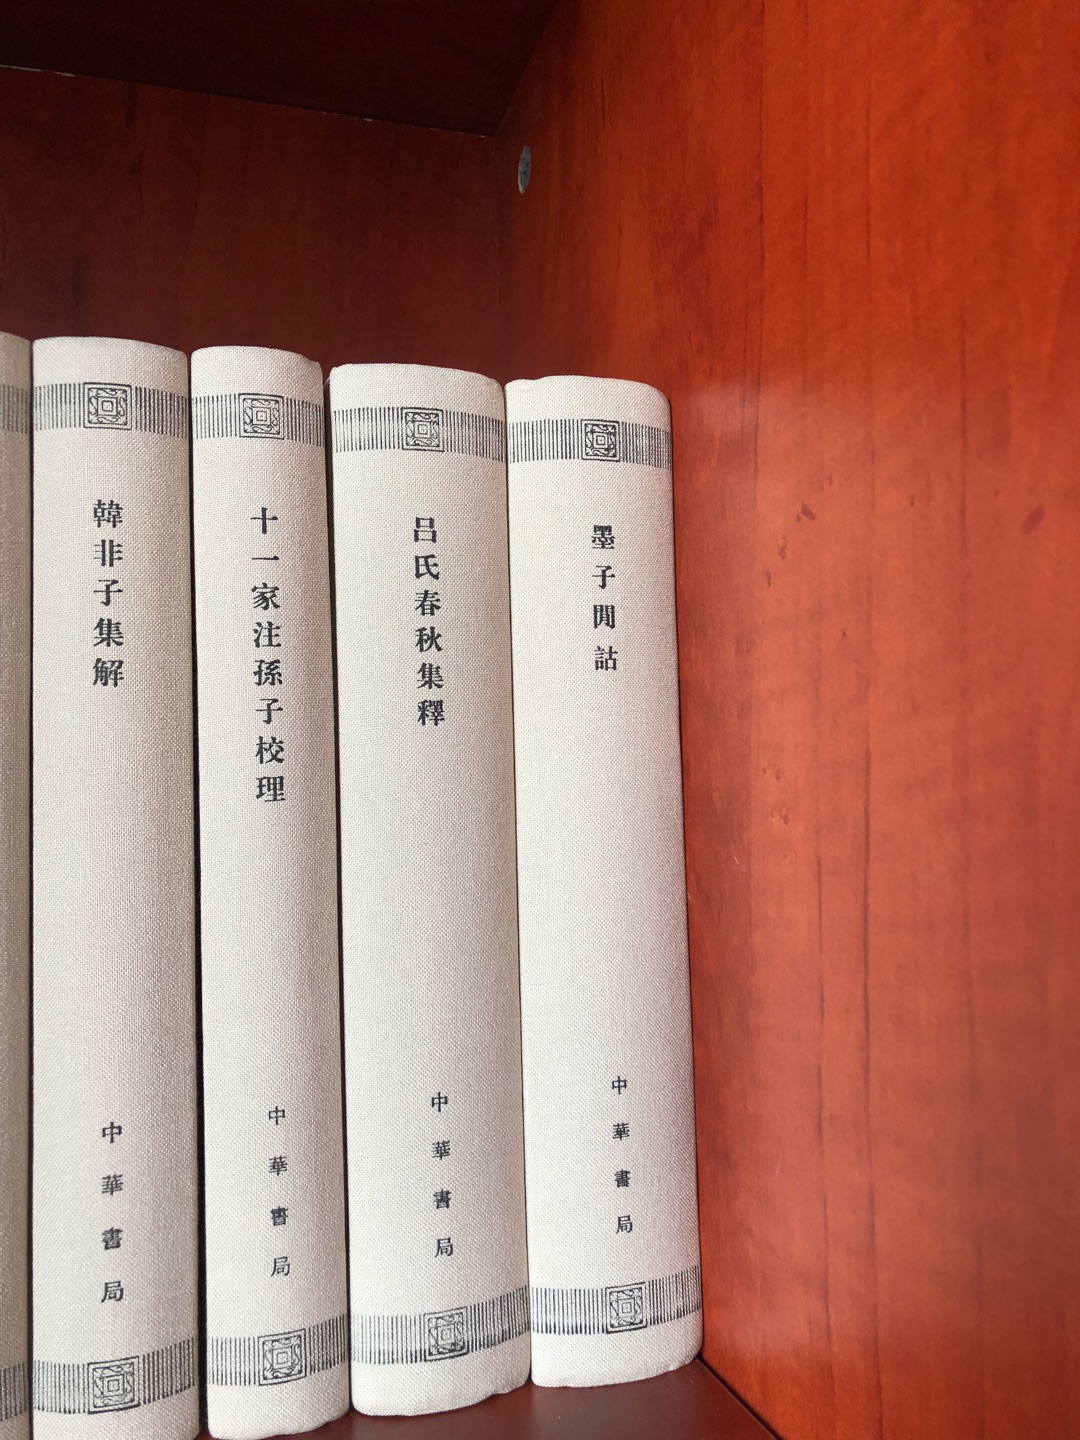 感谢中华书局的这一项功德无量的的出版工作，一个民族之所以有前途，来自于对过去历史文化的传承，满意。